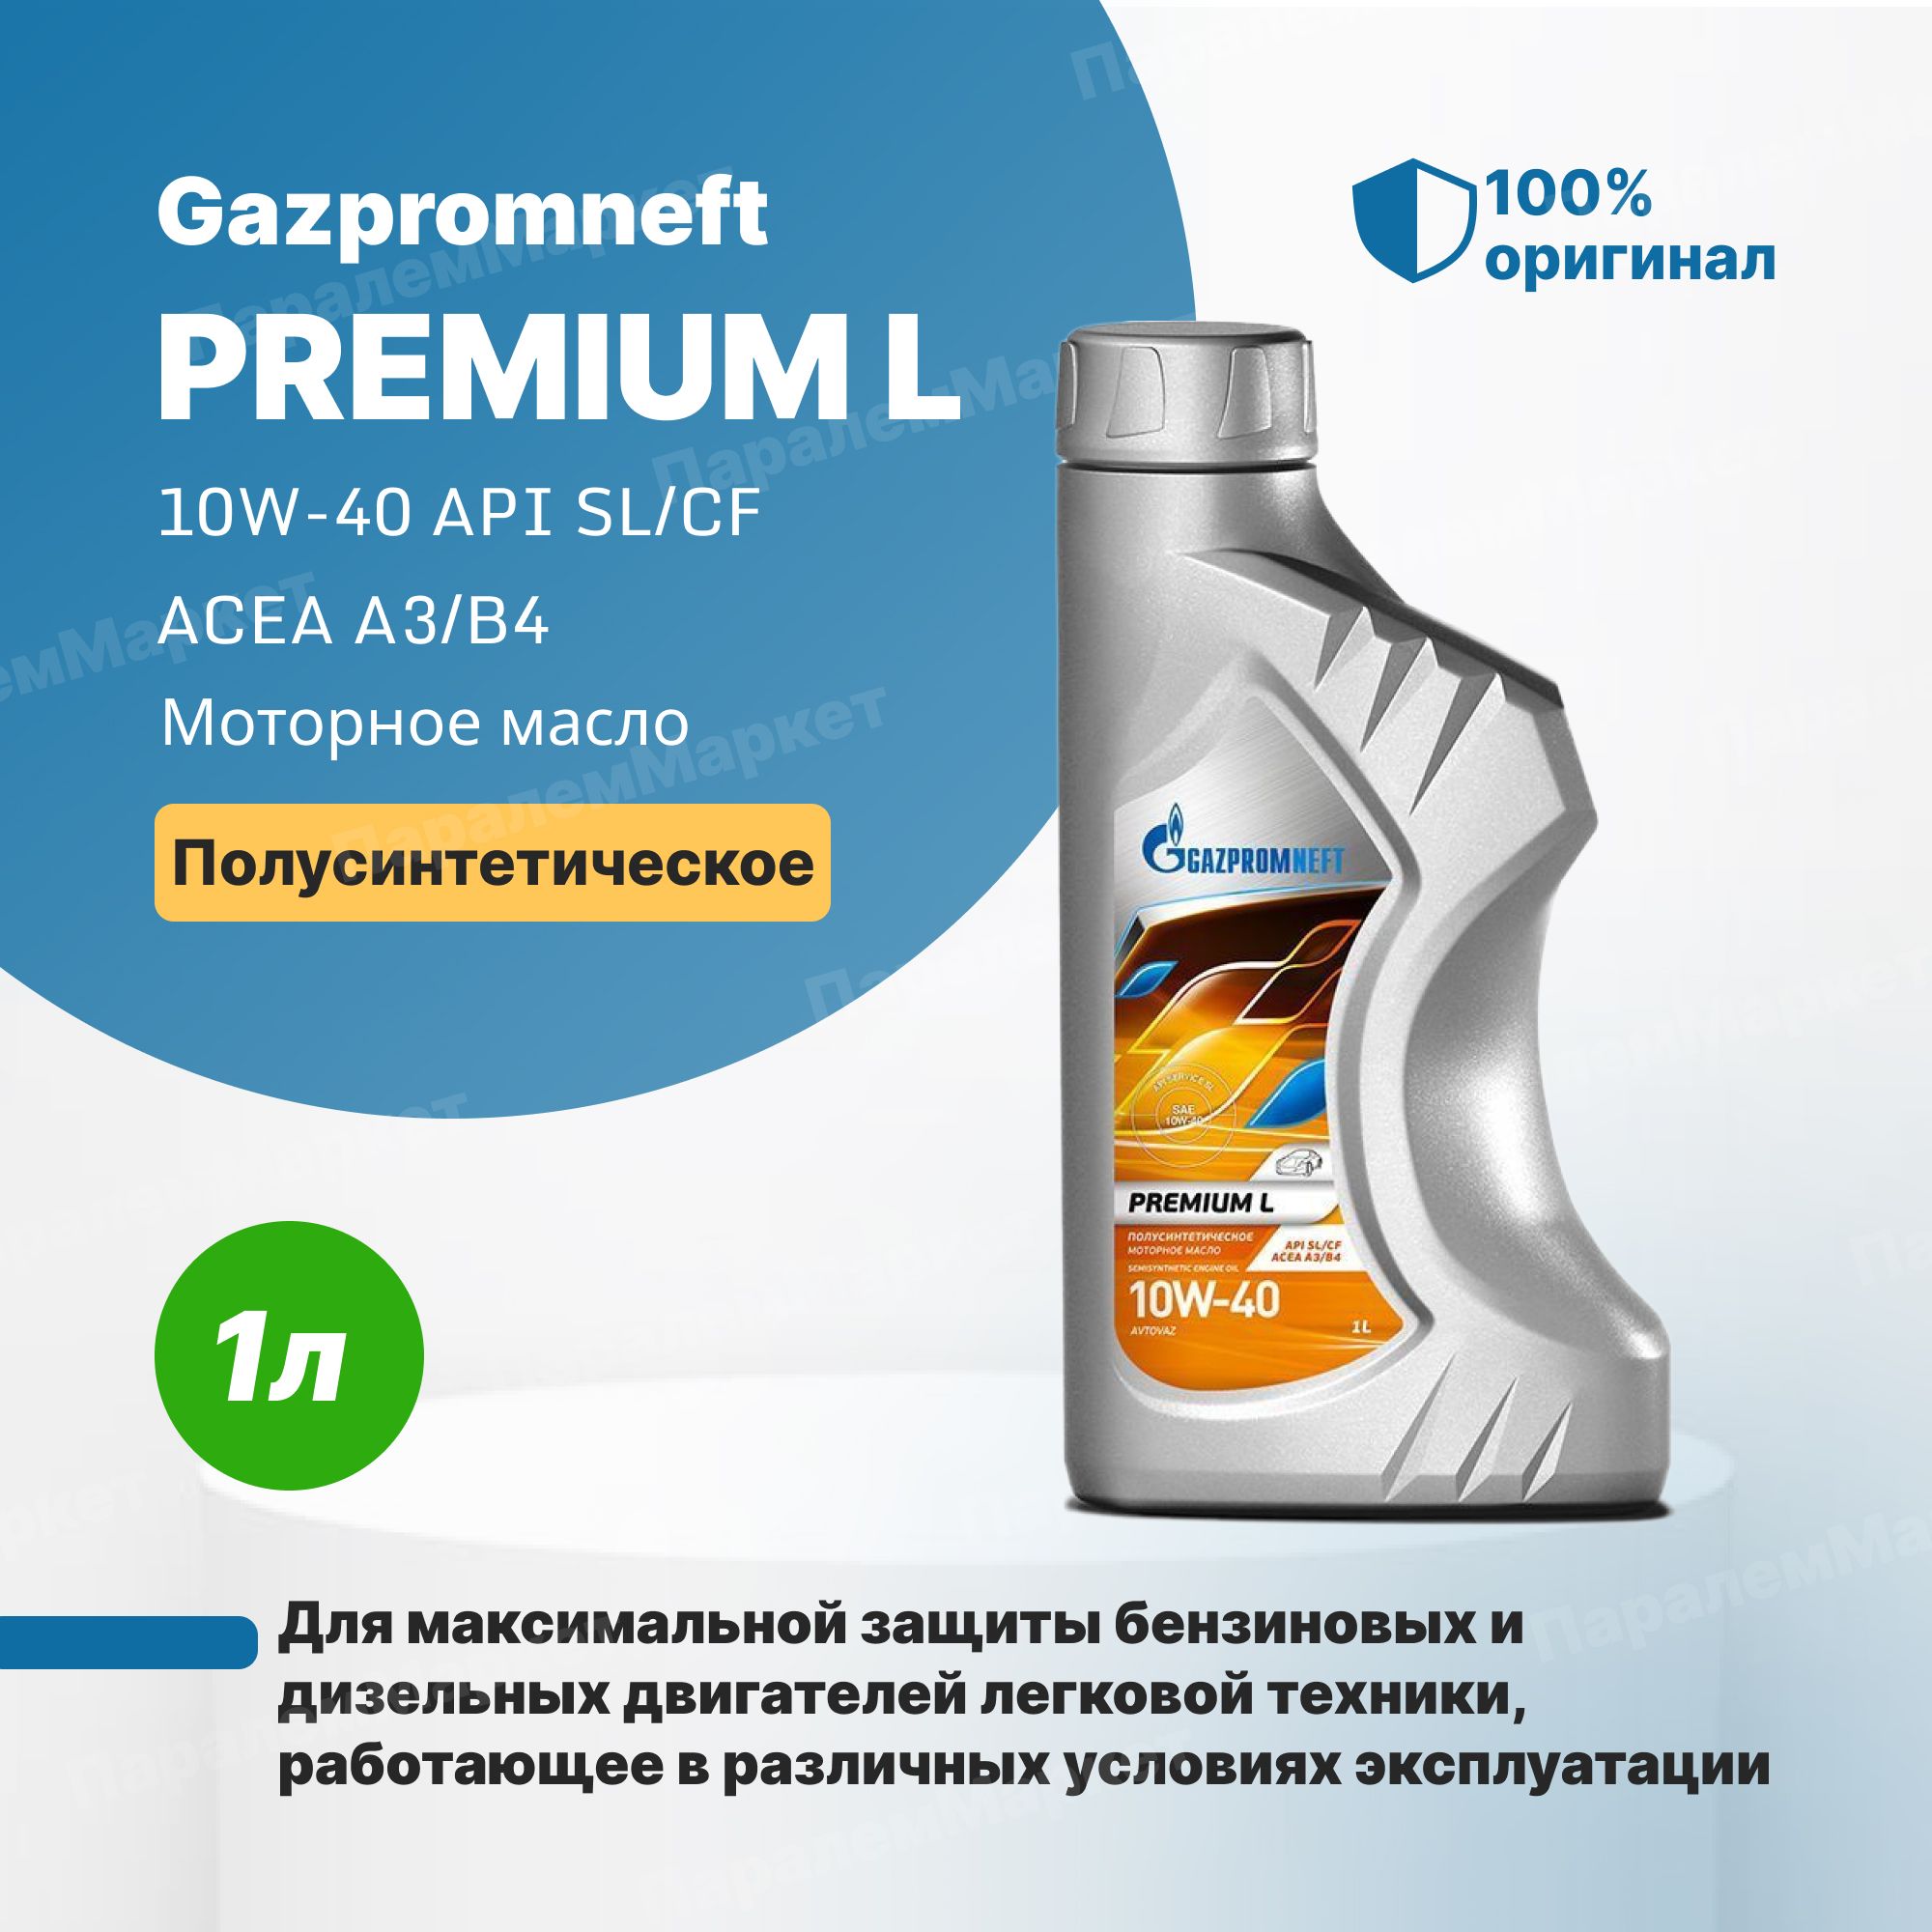 Масло газпромнефть premium n 5w40. Газпромнефть премиум л 10w-40. Масло Газпромнефть 10w 40 Premium l. 2389900124 Gazpromneft масло Gazpromneft Premium l 10w40 моторное полусинтетическое 1 л.